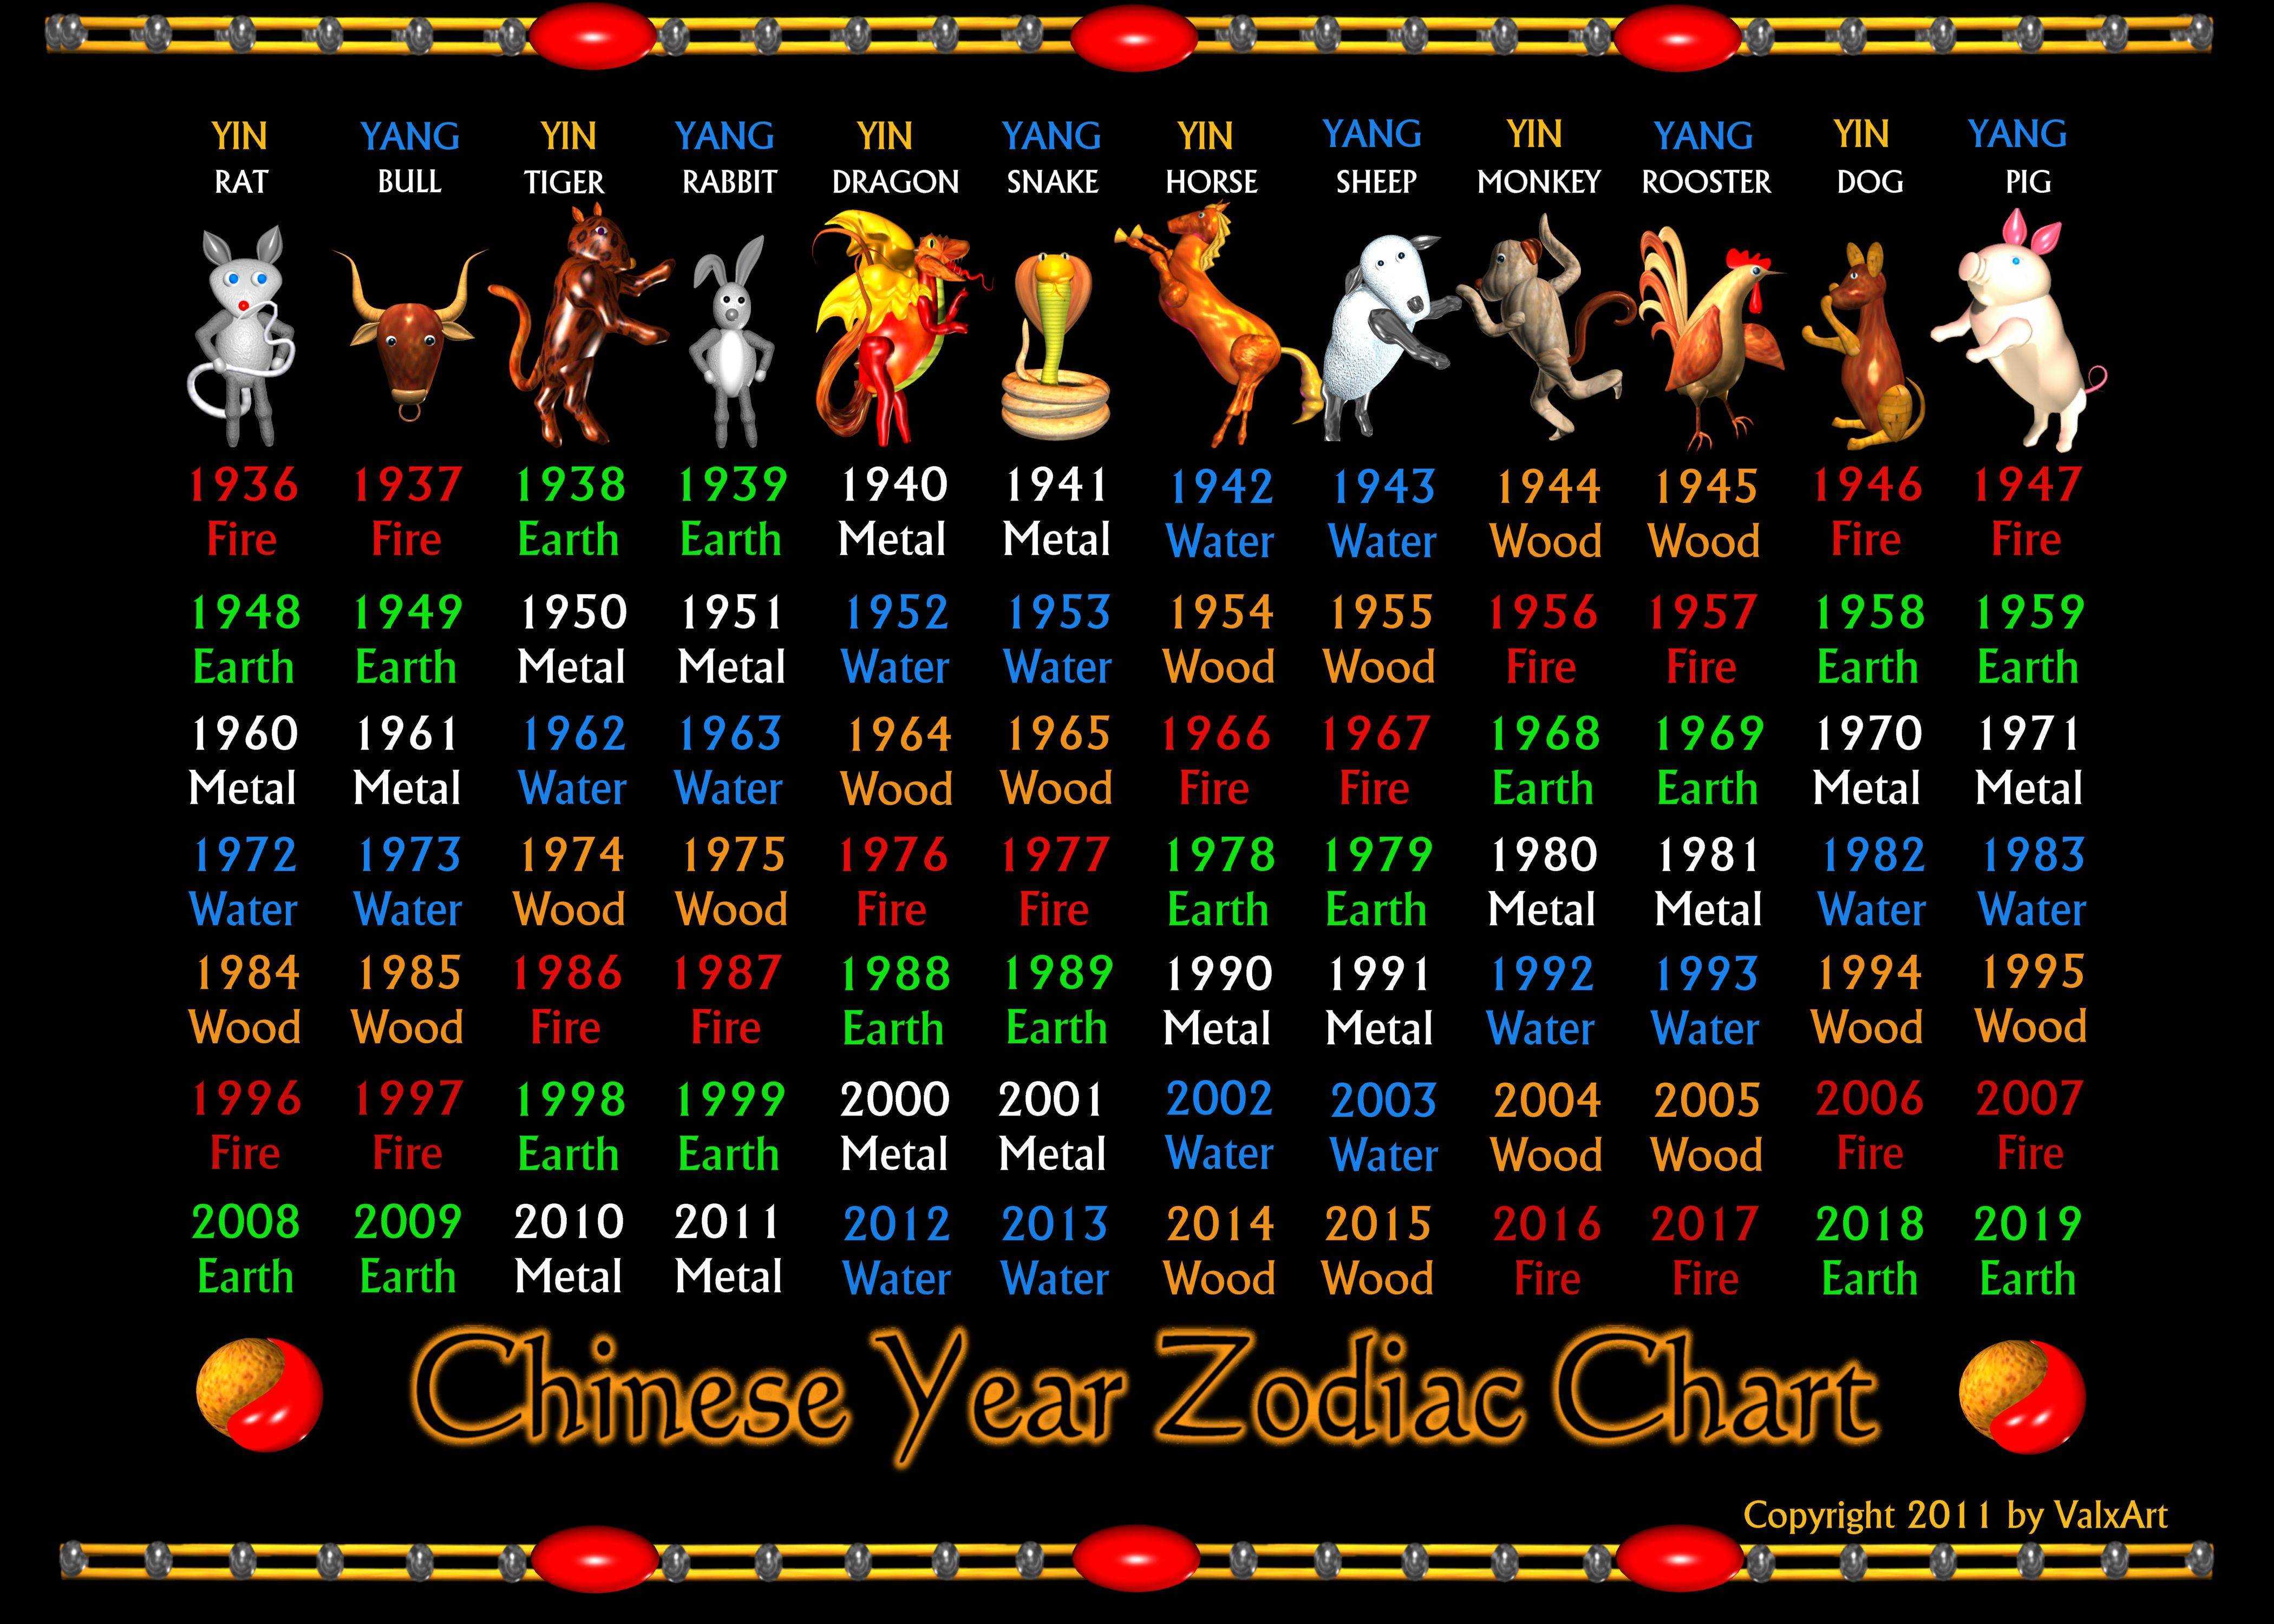 1972 кто по гороскопу. Восточный гороскоп по годам таблица. Знаки гороскопа по годам по порядку китайского. Таблица китайского гороскопа по животным. Китайский год по годам таблица.